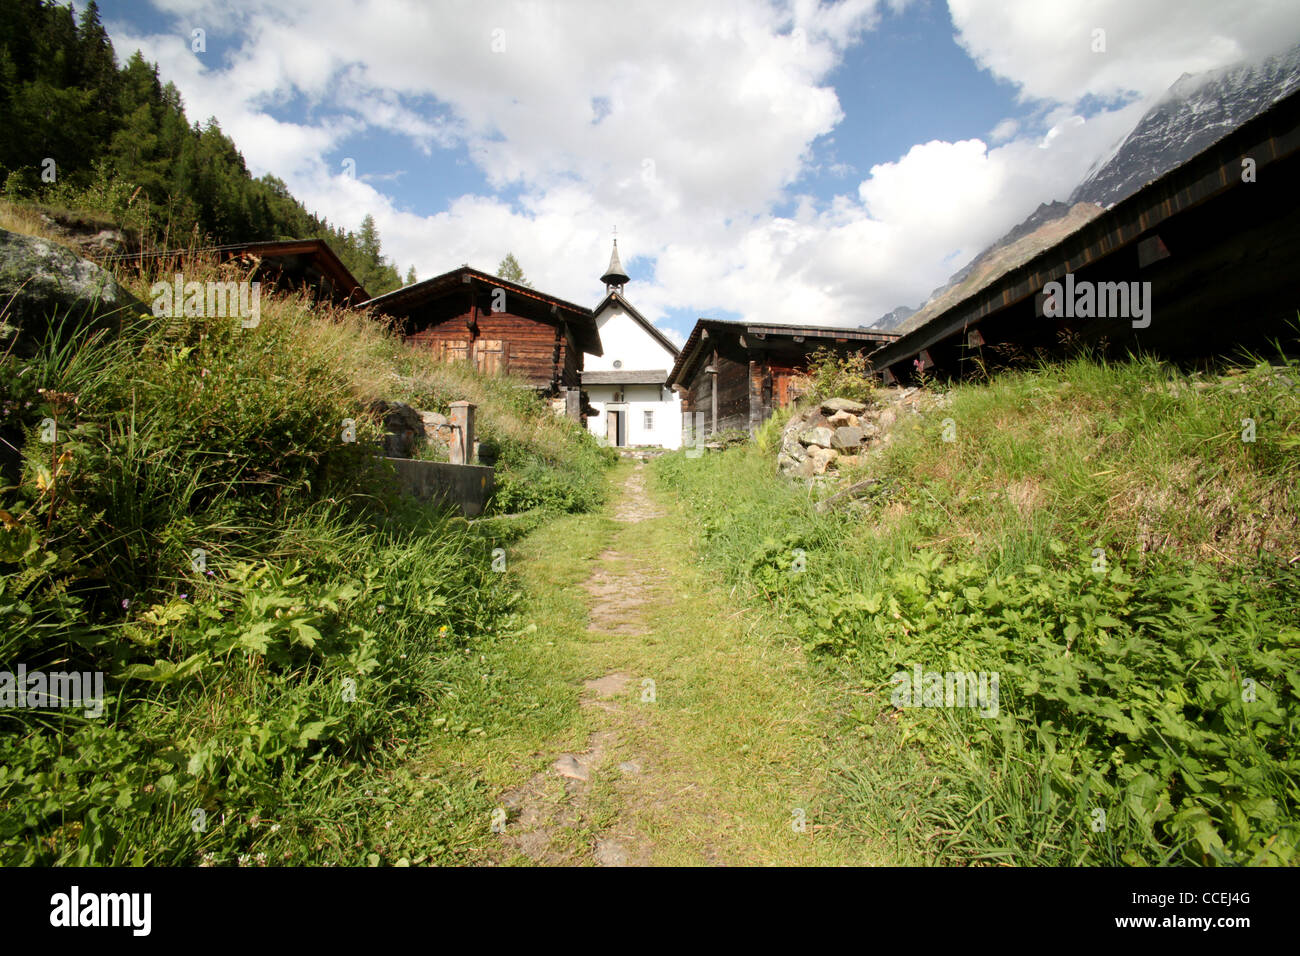 Maisons et granges de bois traditionnelle avec l'église dans un petit village de la vallée de Zinal, Valais, Alpes, Suisse, Europe Banque D'Images